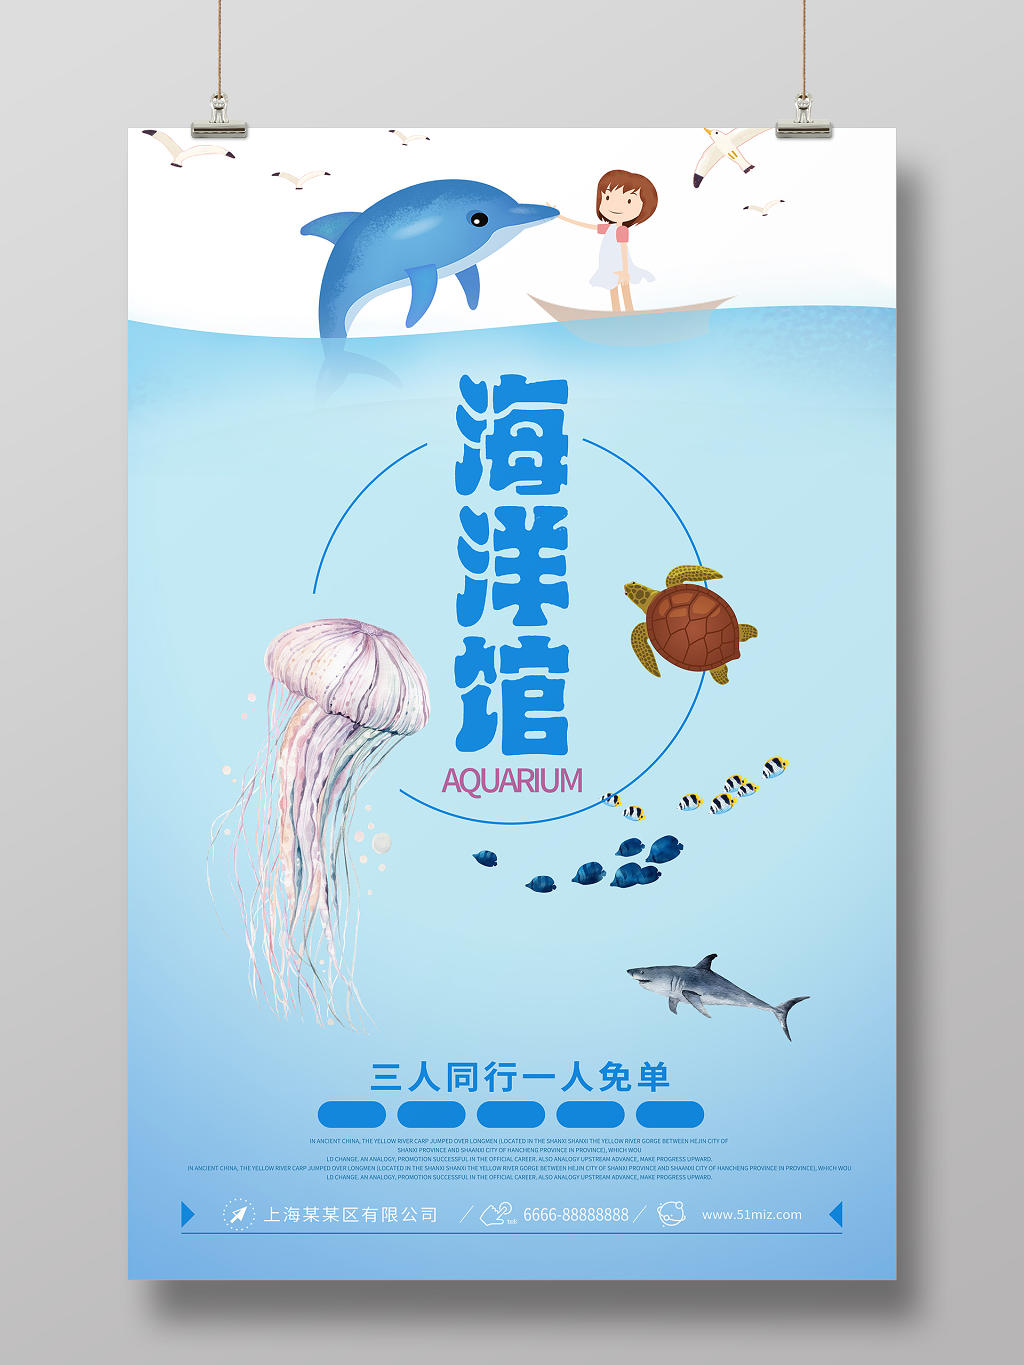 蓝色简约海底世界水族海洋馆大冒险海报